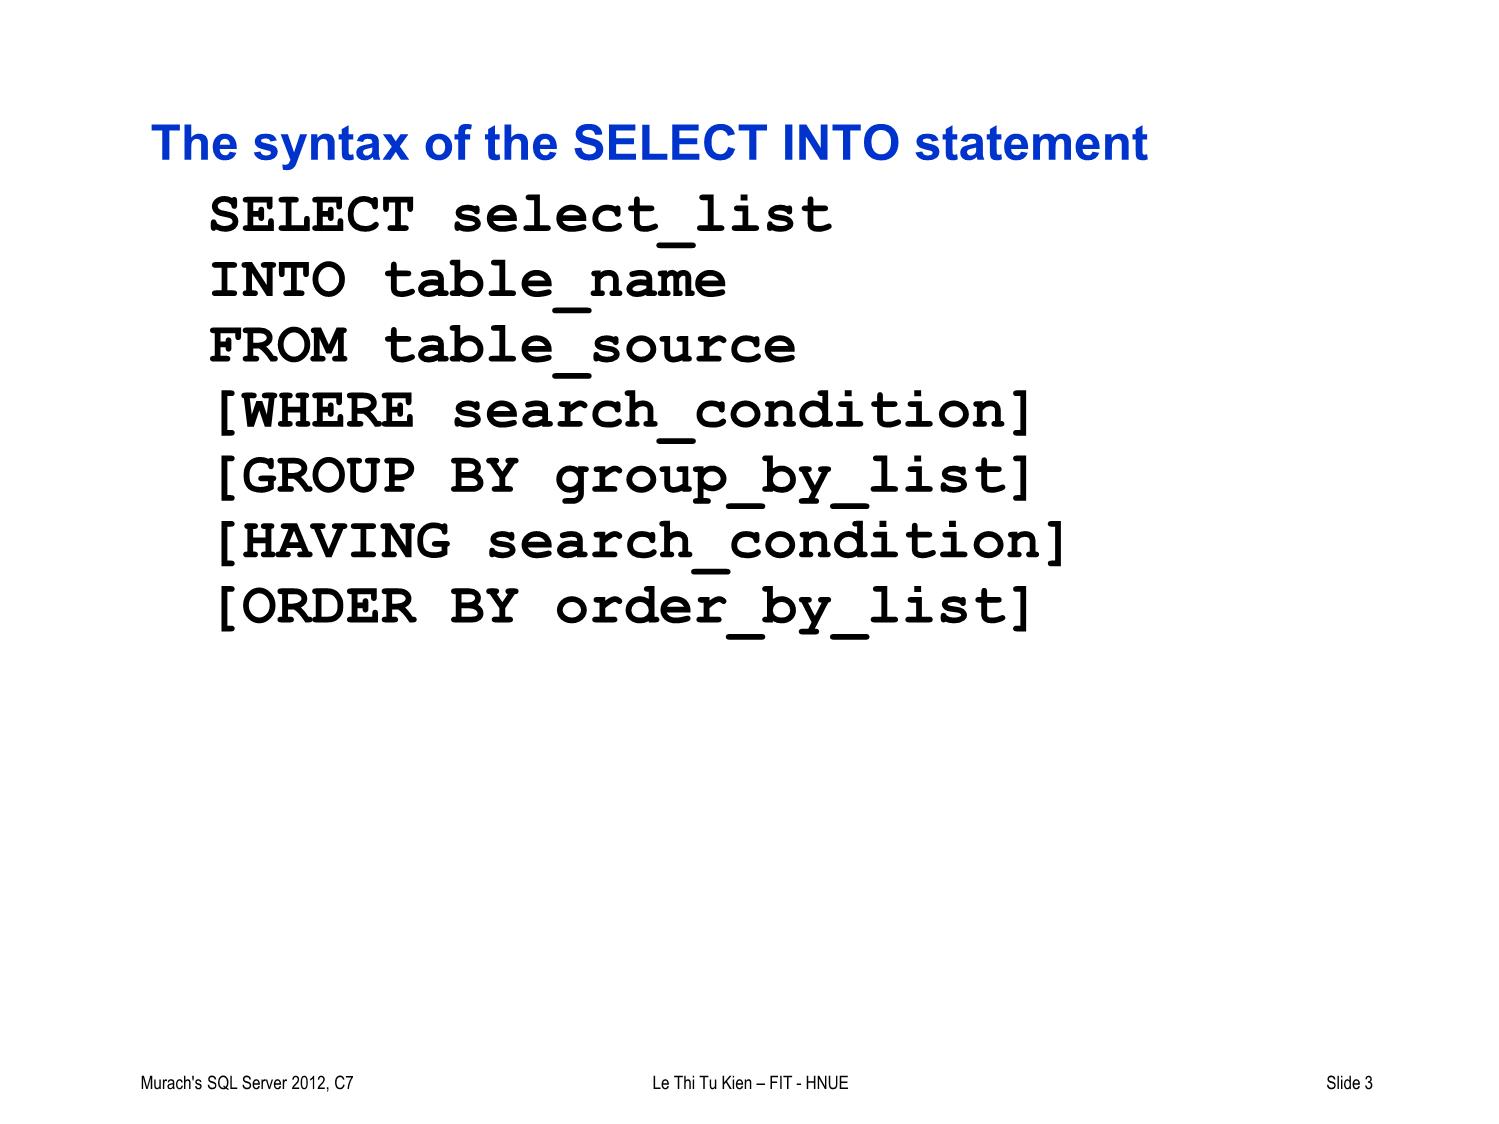 Bài giảng Hệ quản trị cơ sở dữ liệu SQL Server - Lecture 8: How to insert, update, and delete data - Lê Thị Tú Kiên trang 3